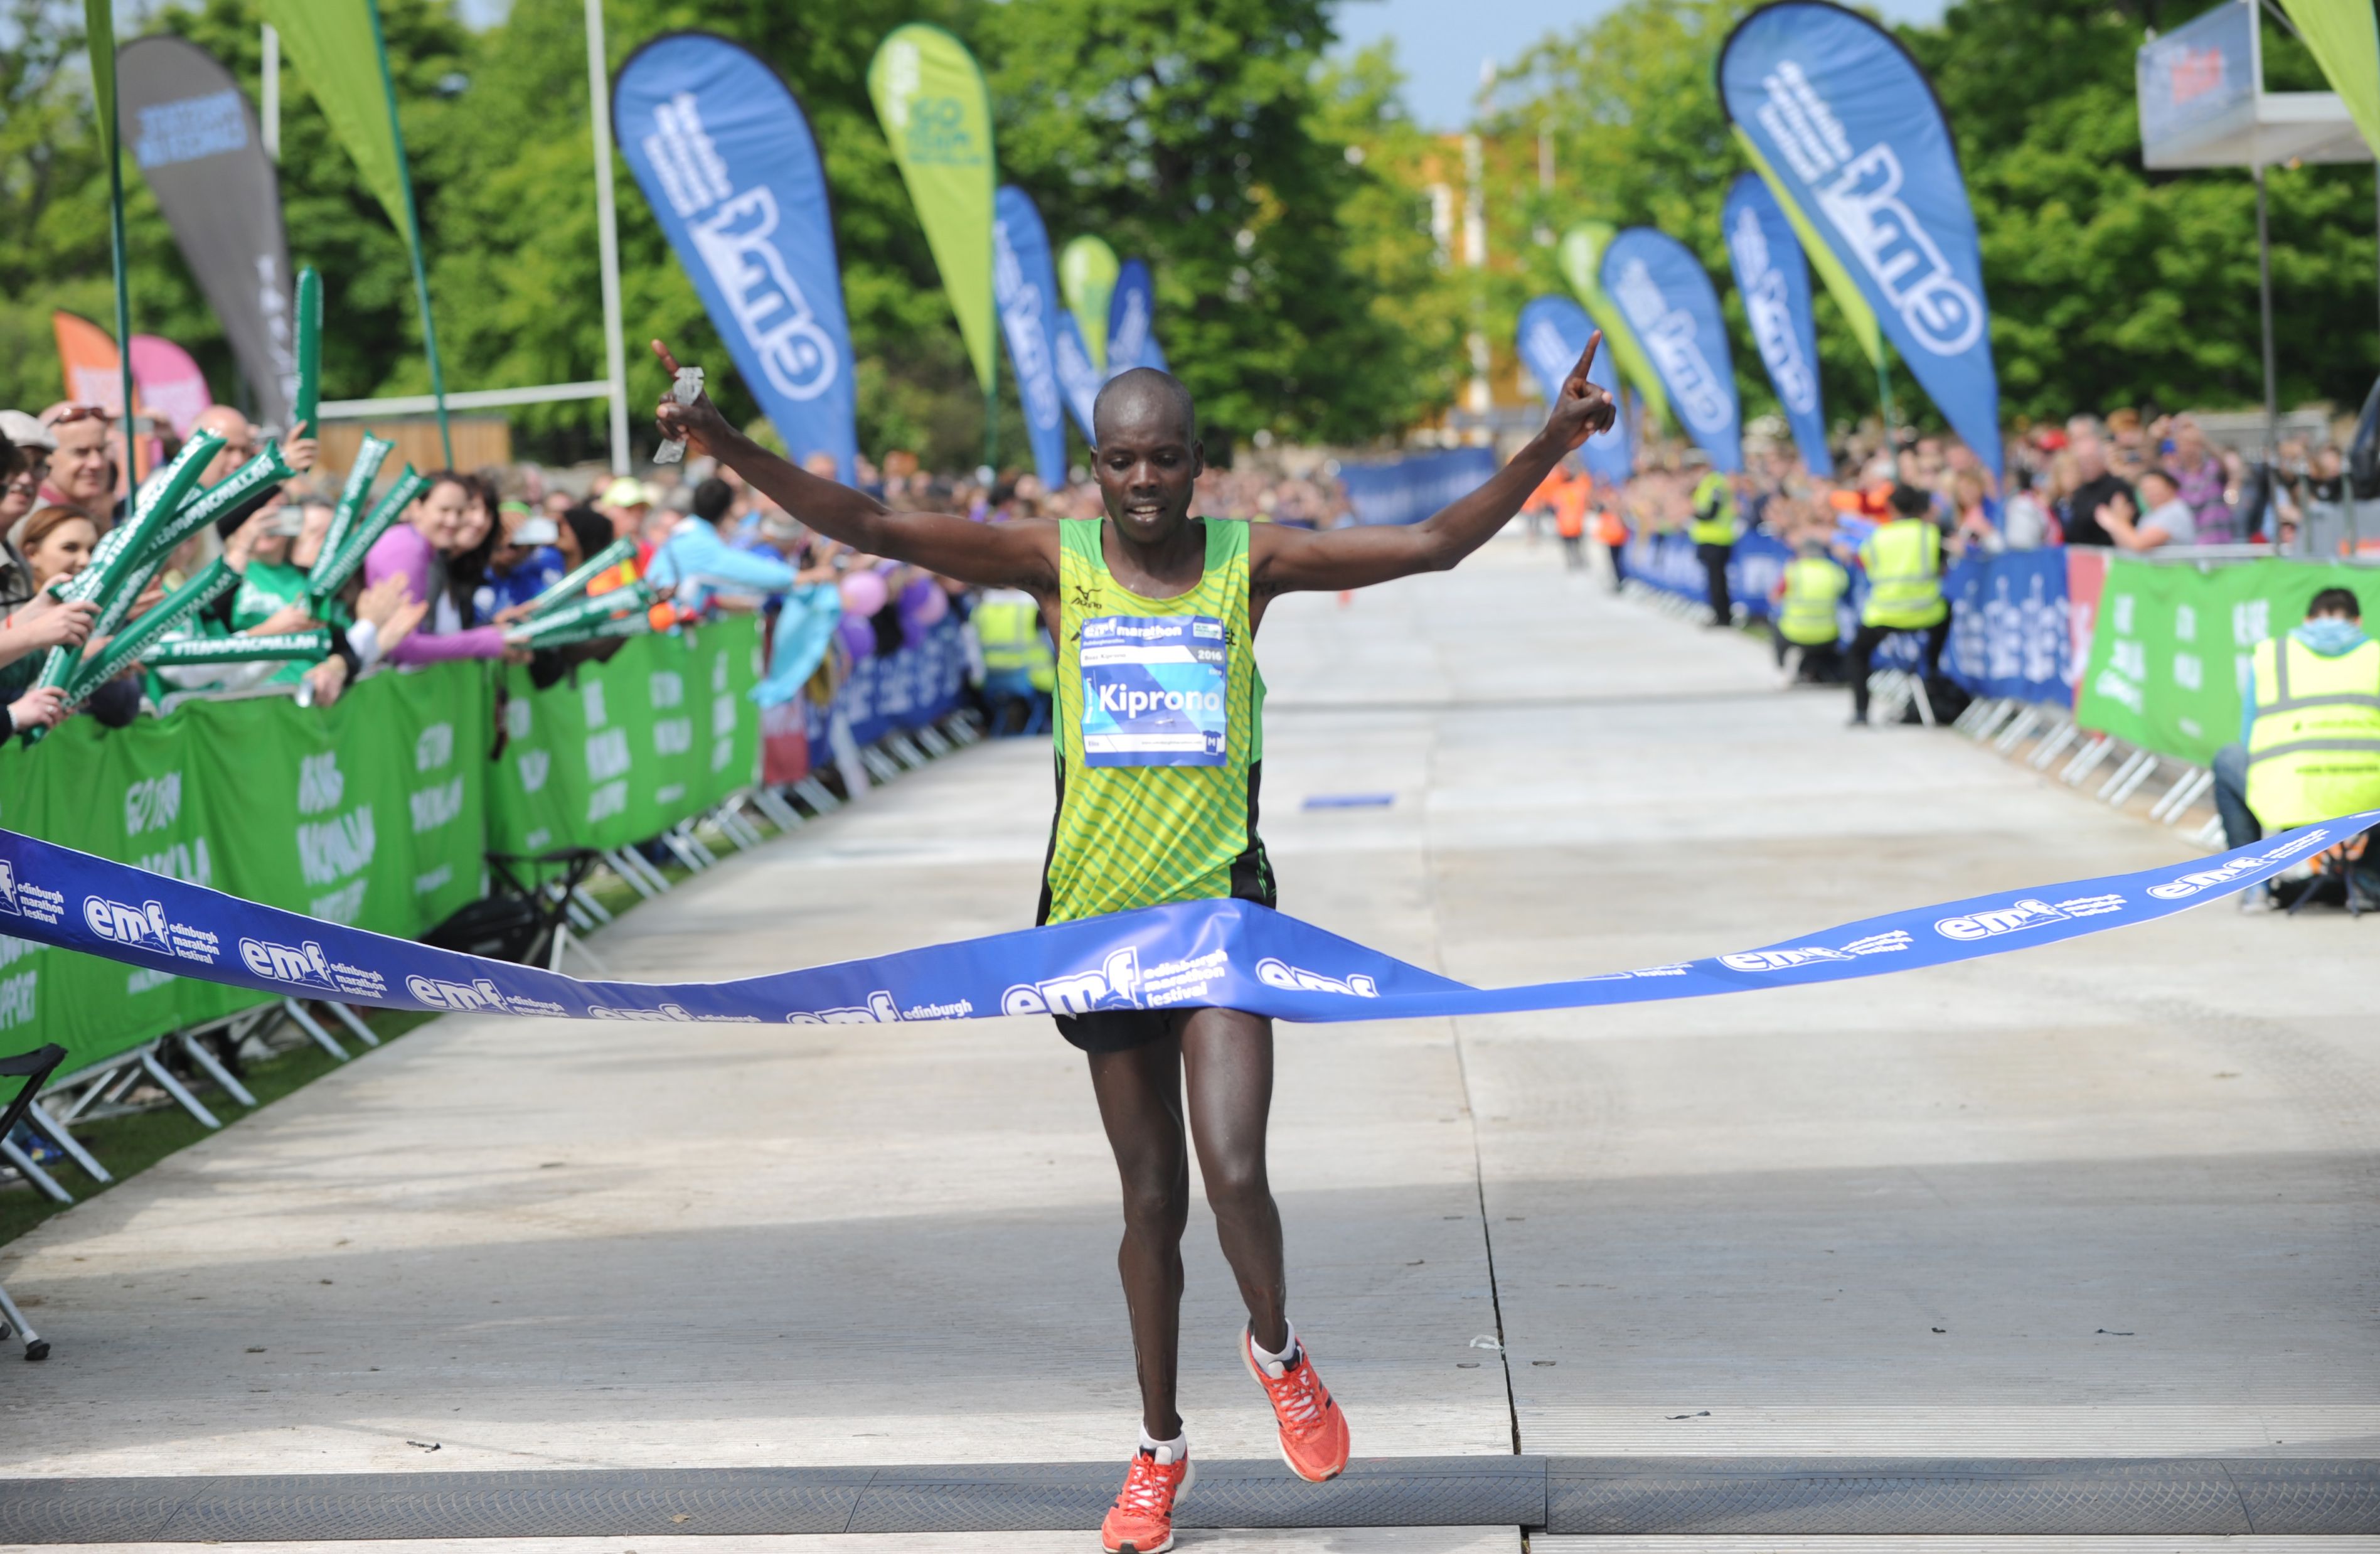 2016 Marathon winner